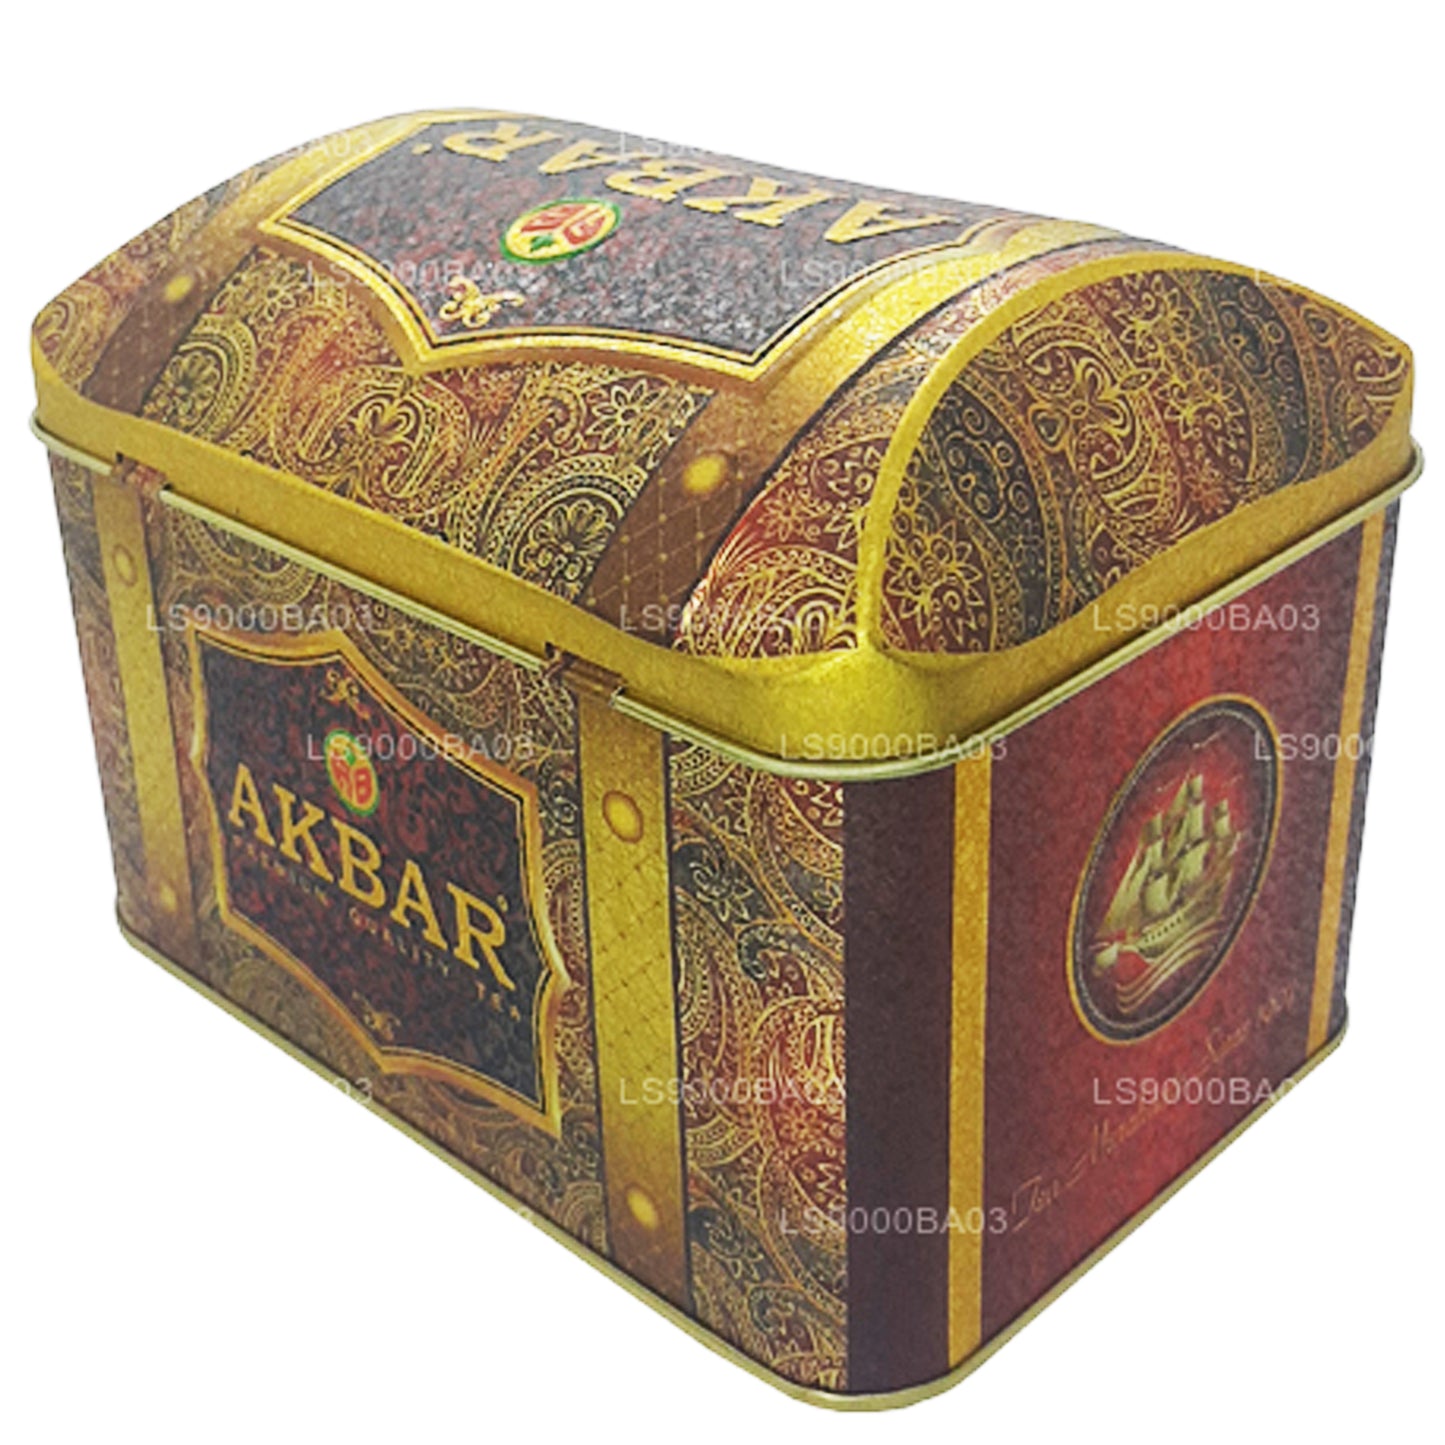 Caja de tesoros de crema de fresa de la colección exclusiva de Akbar (250 g)